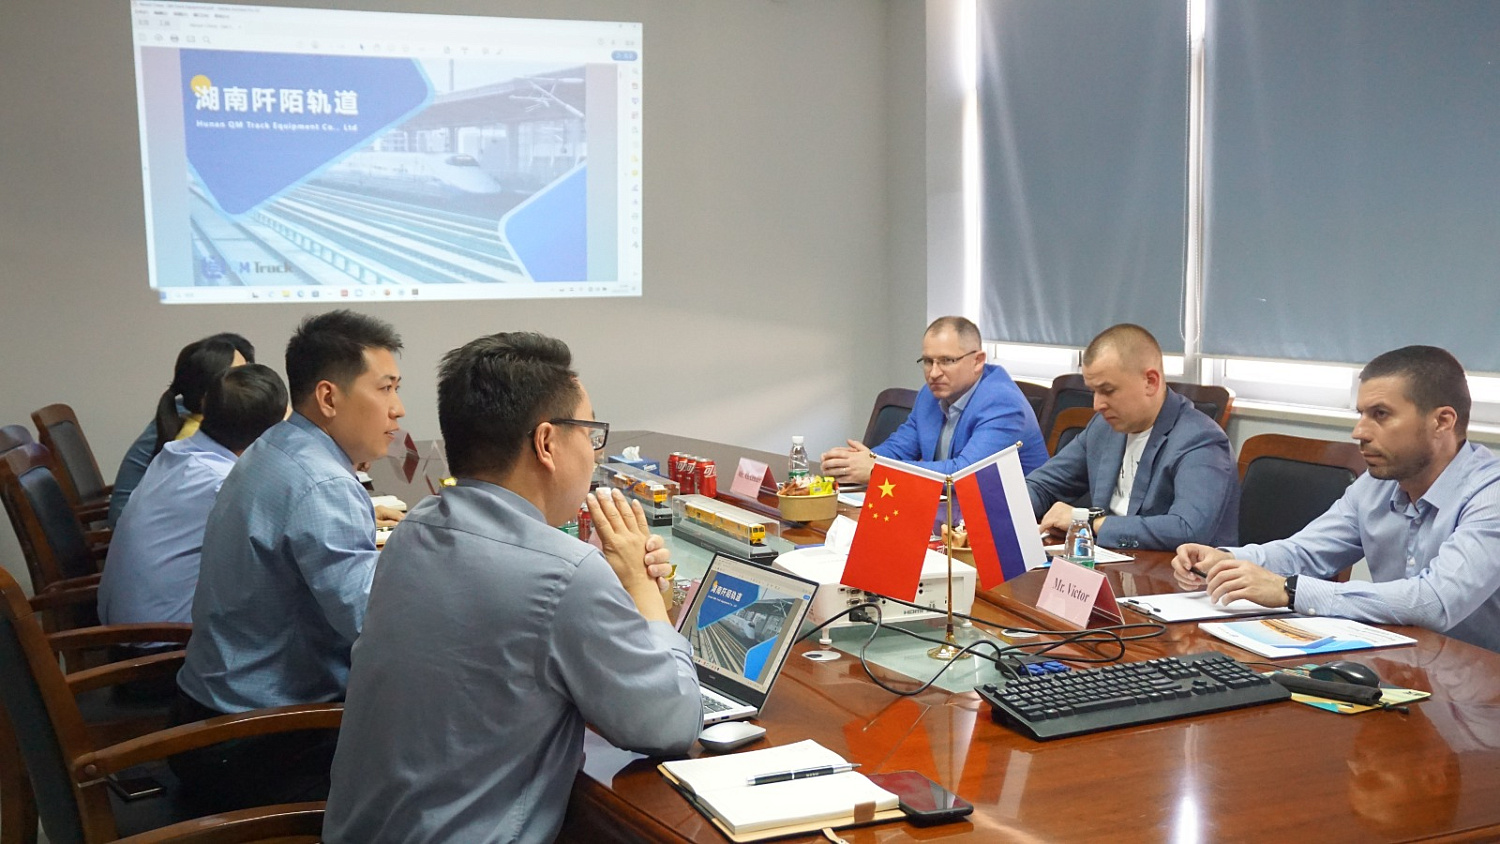 Встреча представителей Hunan QM Track Equipment Co., Ltd из КНР и ООО «Инжиниринг Сервис-Путьмаш» стала основой для конструктивного делового сотрудничества